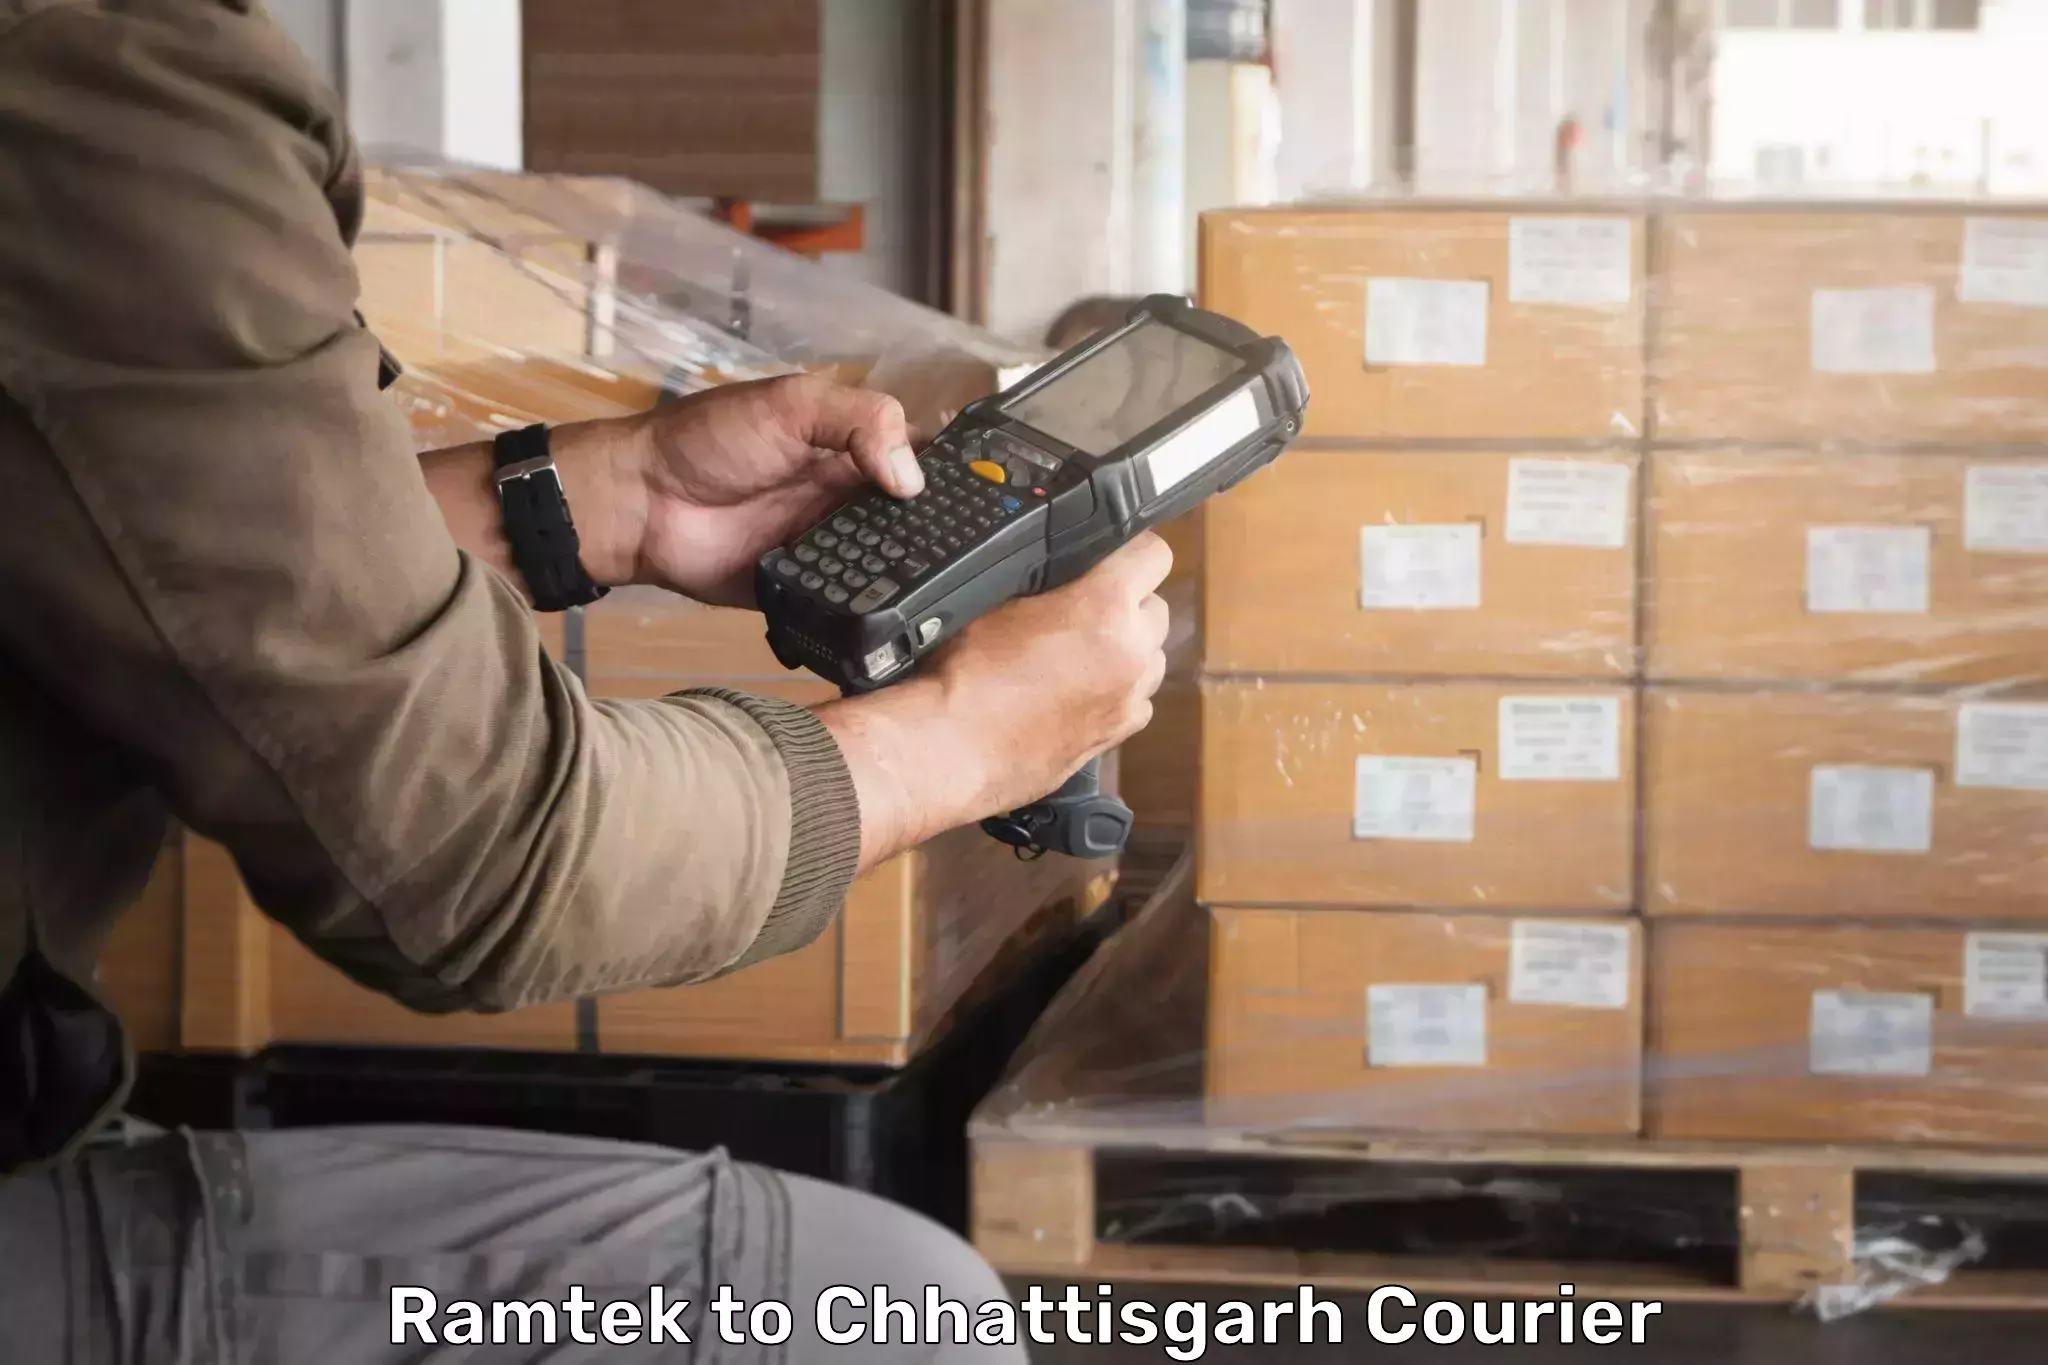 High-speed parcel service Ramtek to Chhattisgarh